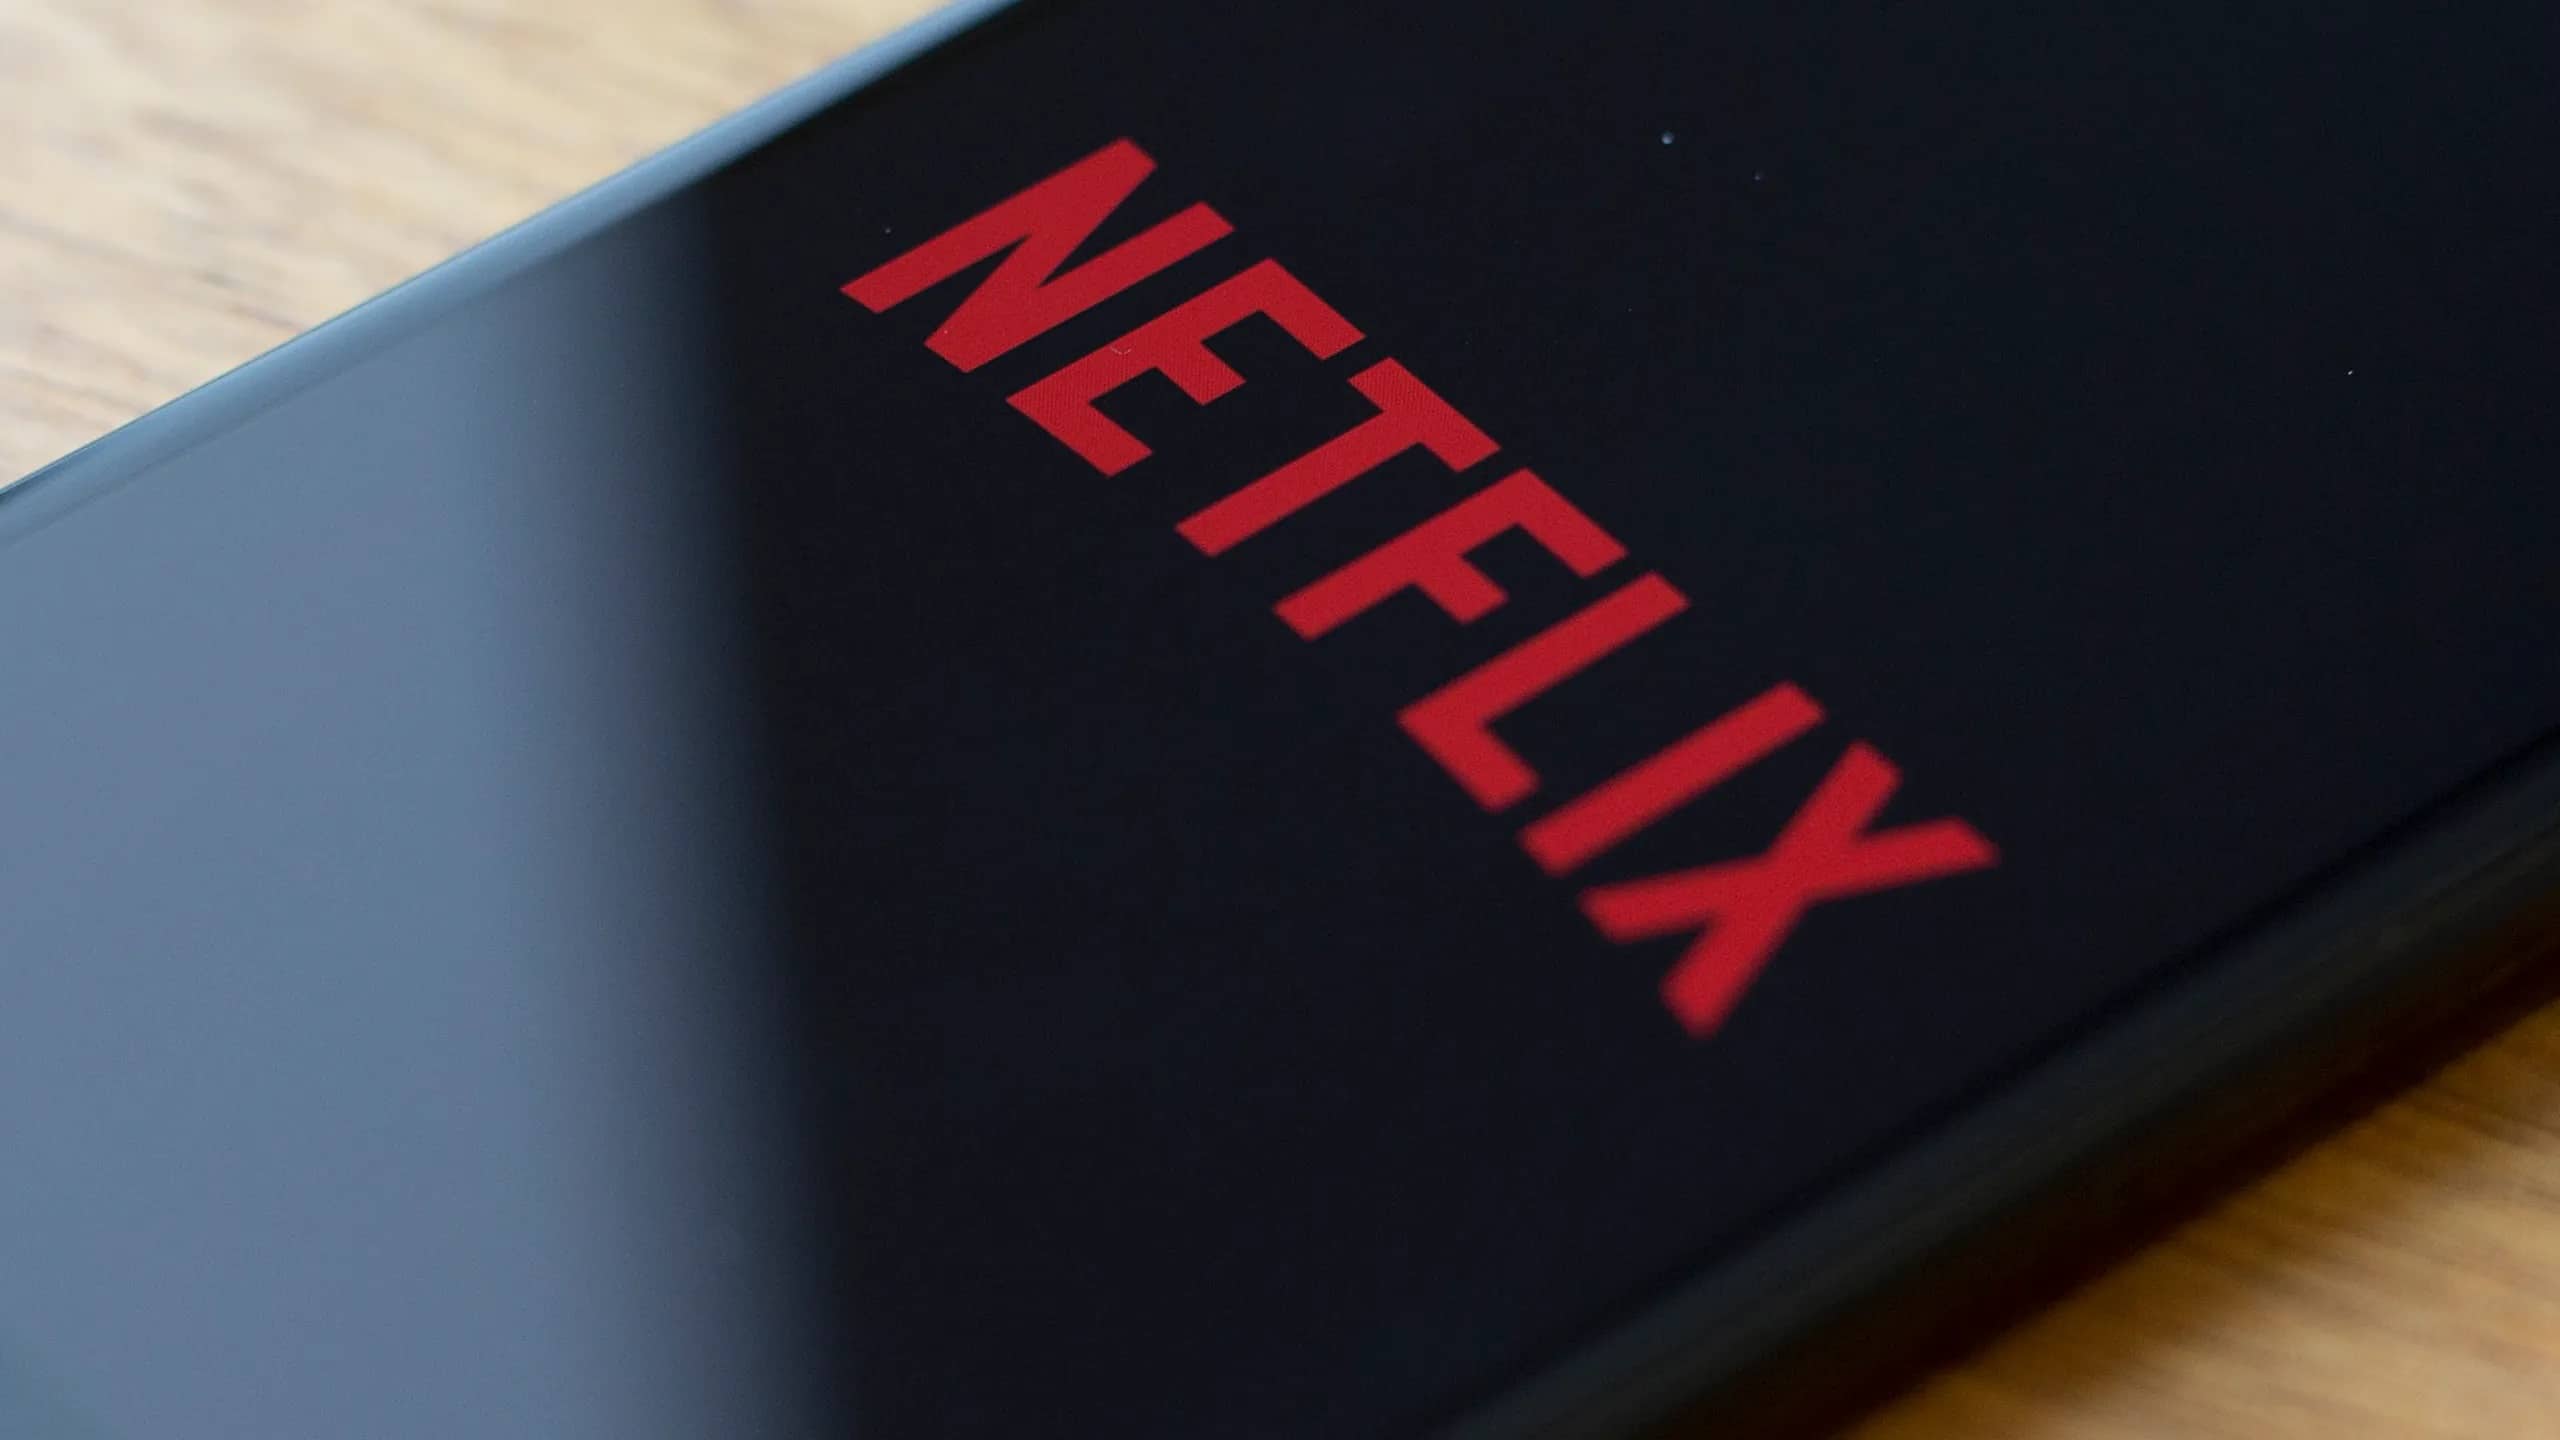 Tout n’est pas rose chez Netflix : le géant du streaming licencie dans son personnel pour freiner son ralentissement de croissance